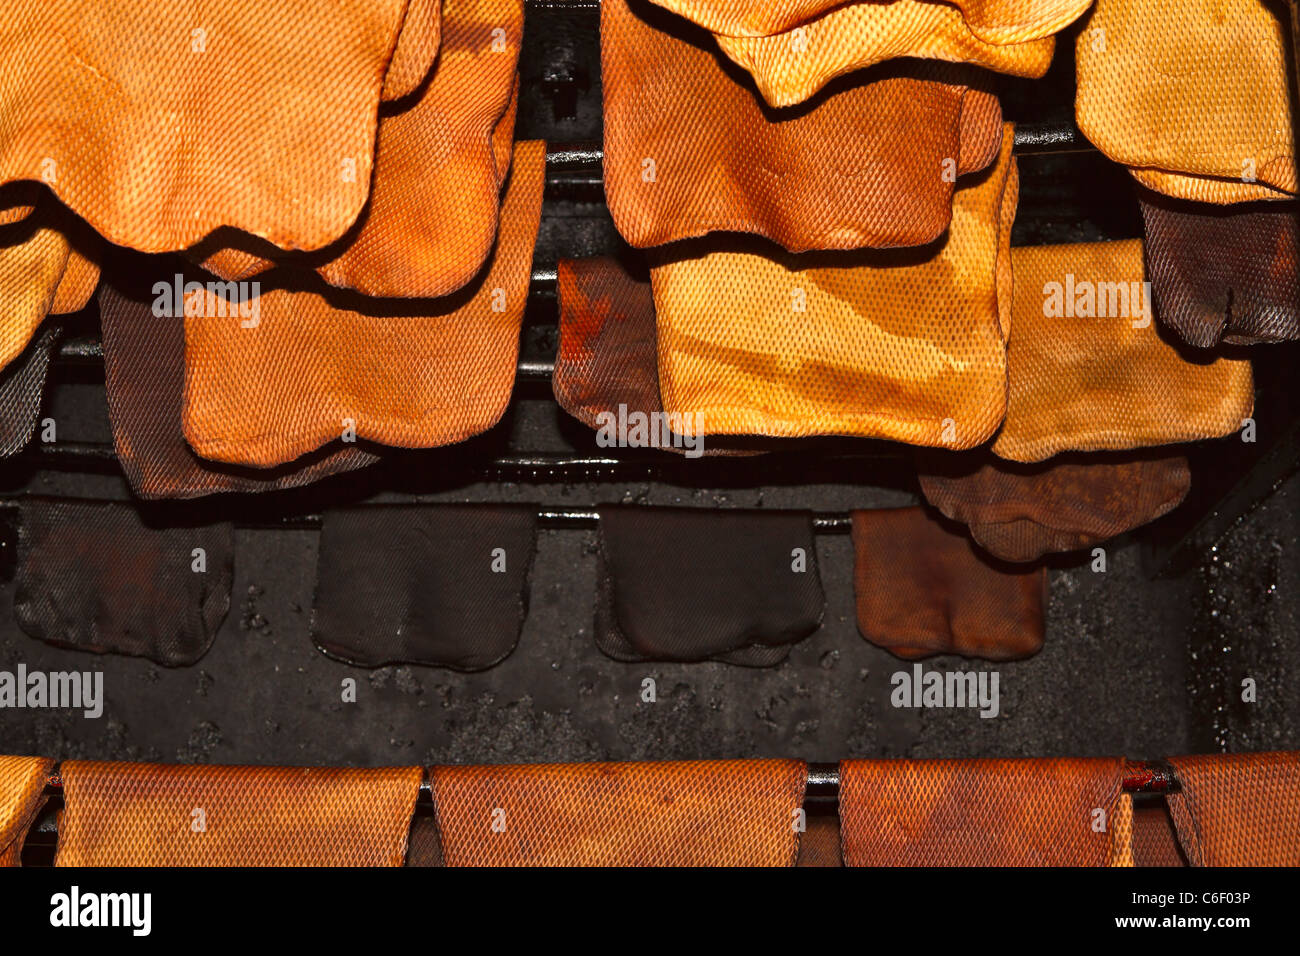 Rauchen-Beläge in einer Räucherkammer. Bettwäsche aus Latex sind zunächst  getrocknet und dann eine Woche lang geraucht Stockfotografie - Alamy